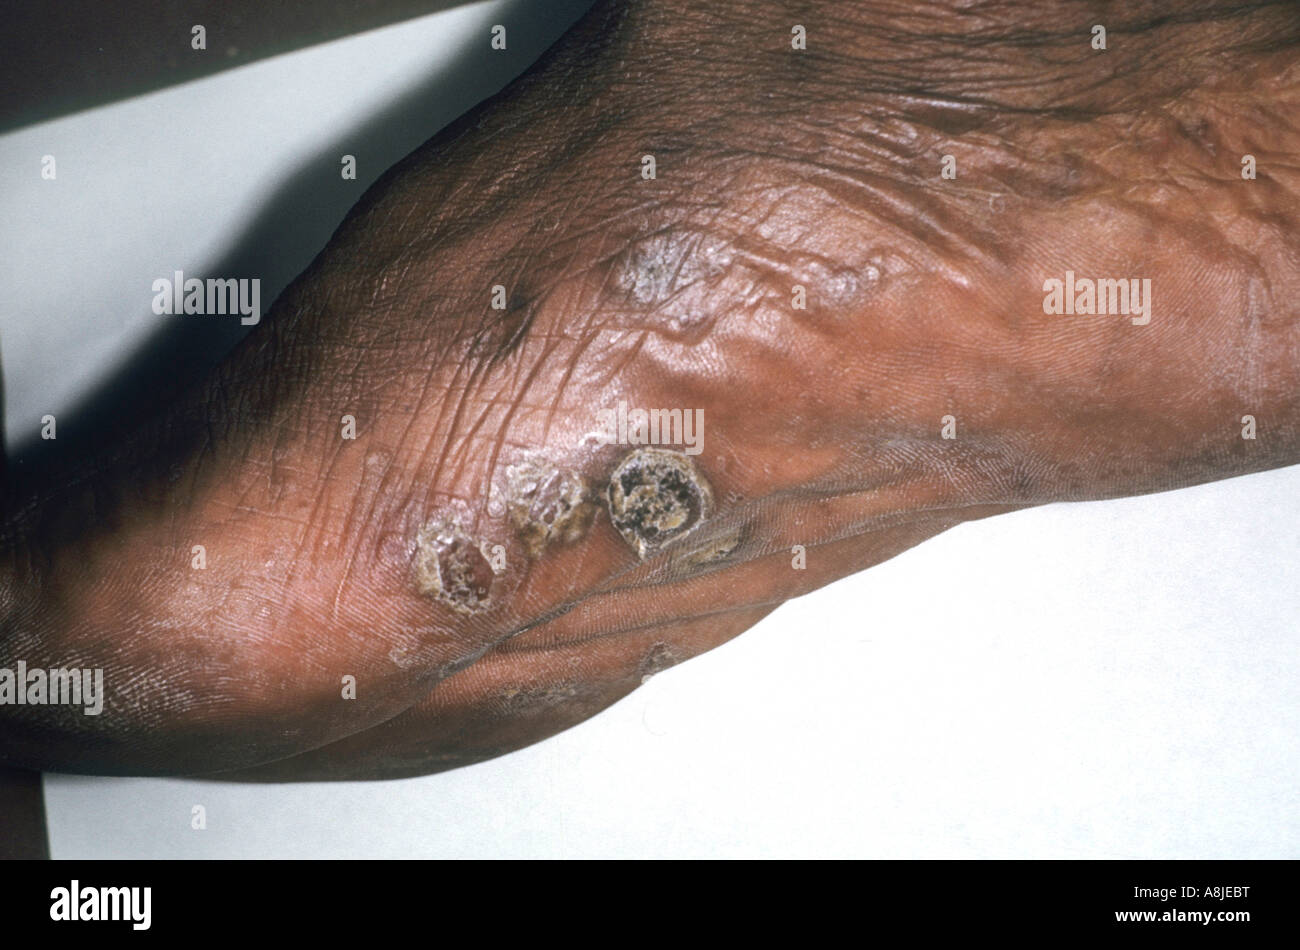 Disidrosi è una condizione della pelle dei palmi e piante dei piedi. Il nome alternativo è Pompholyx. Foto Stock